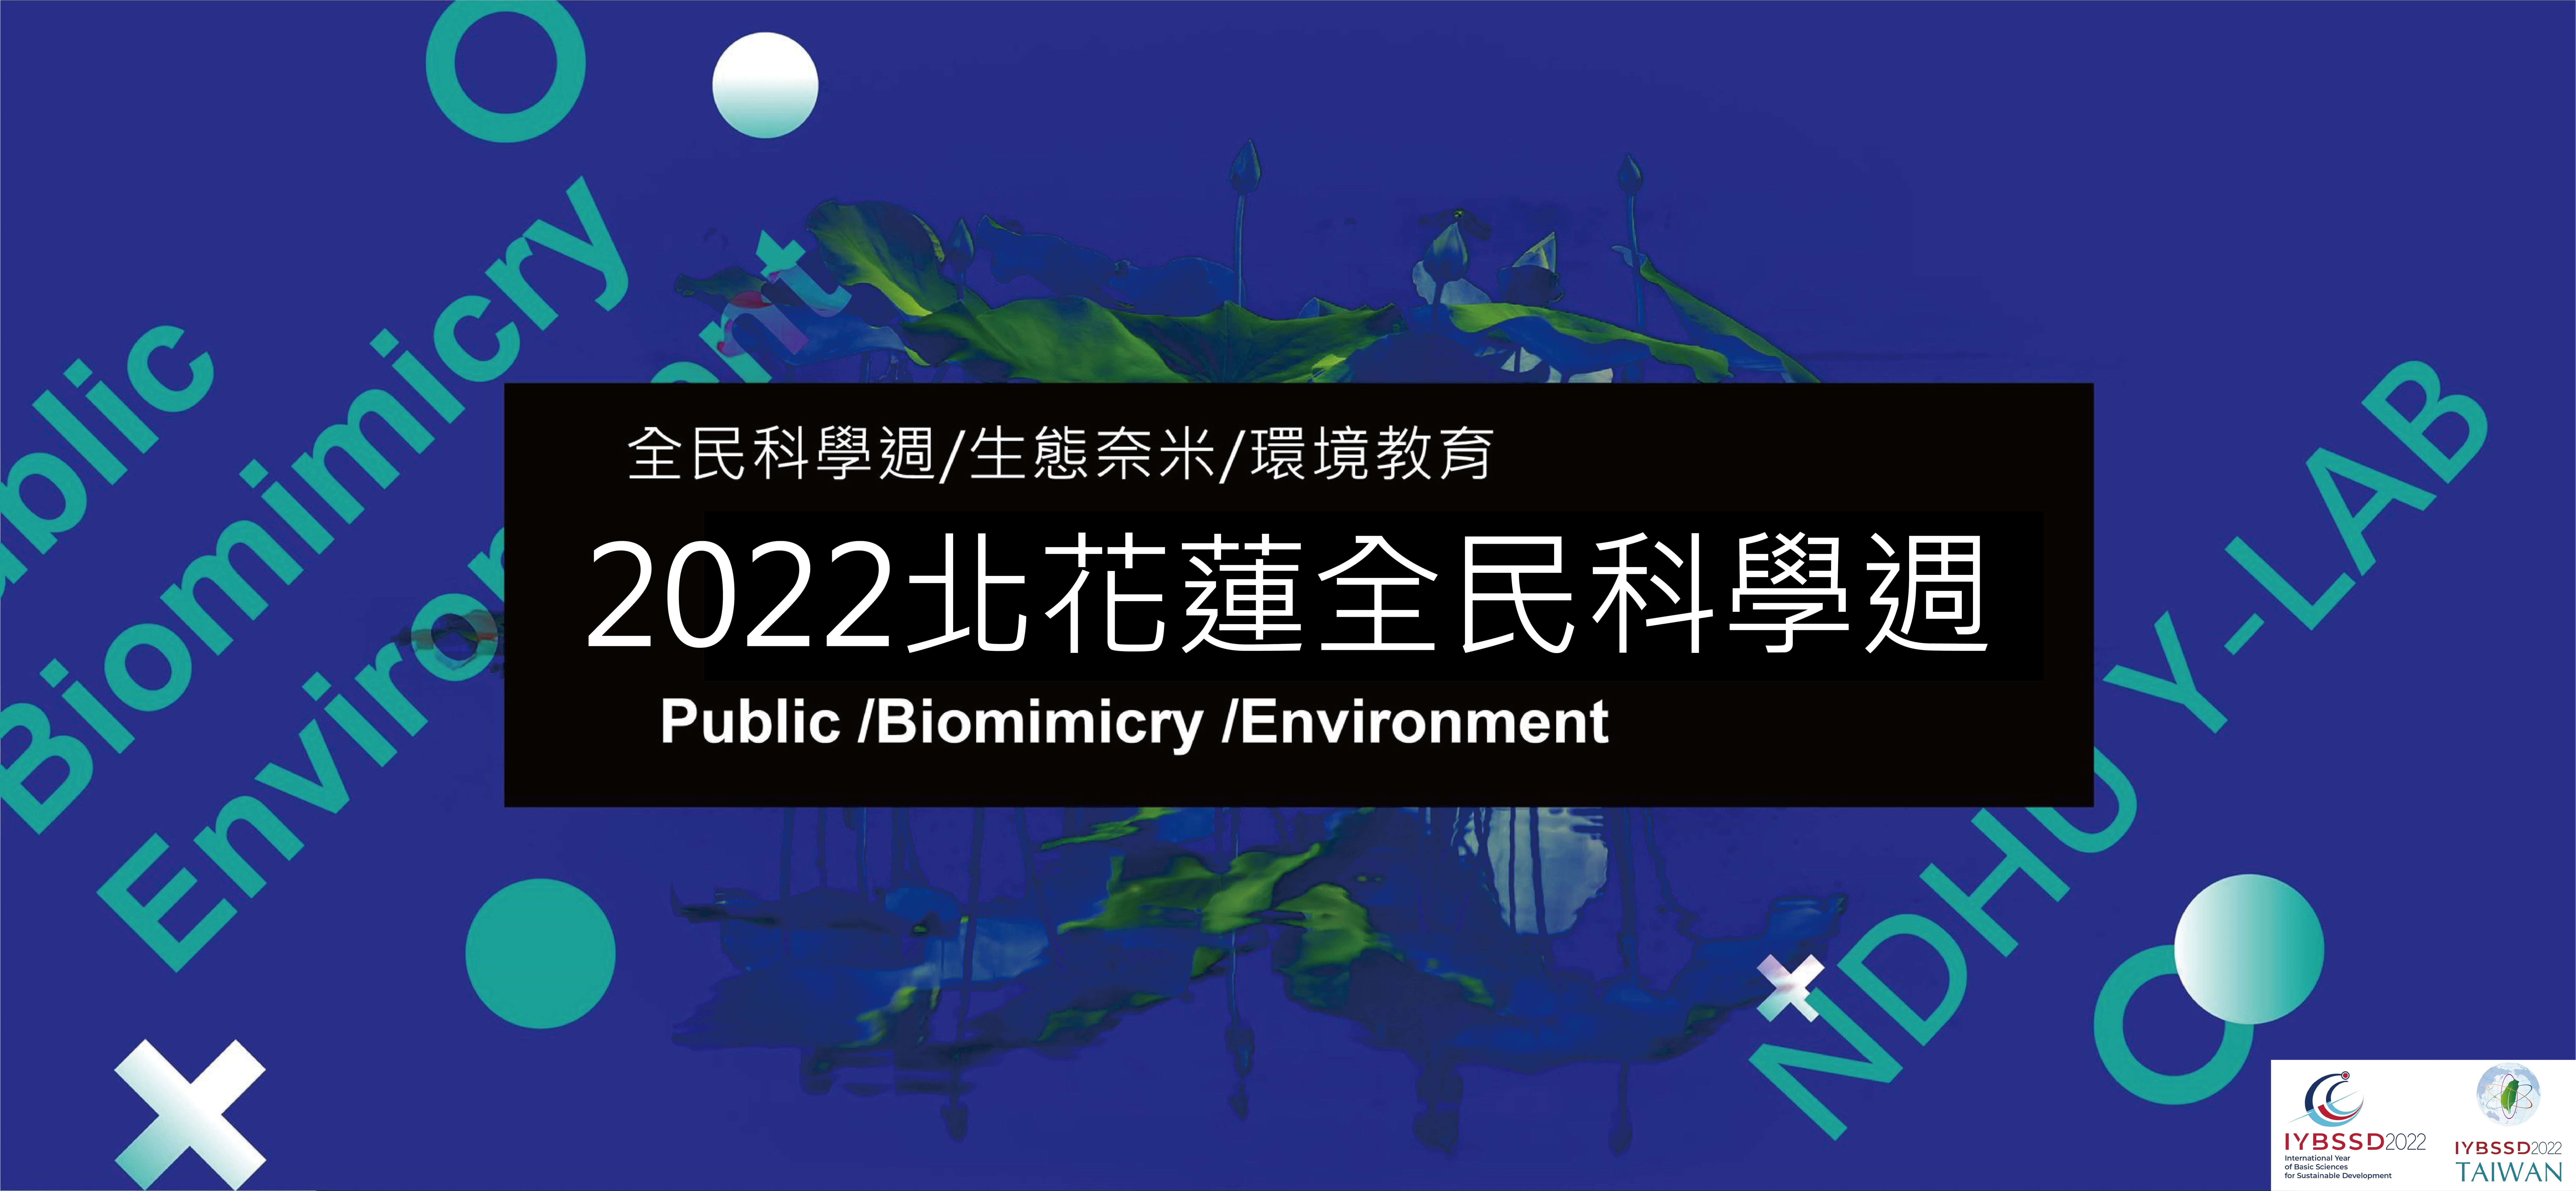 2022北花蓮全民科學週-種子研習營_國高中組 Promotional Graphics or Posters